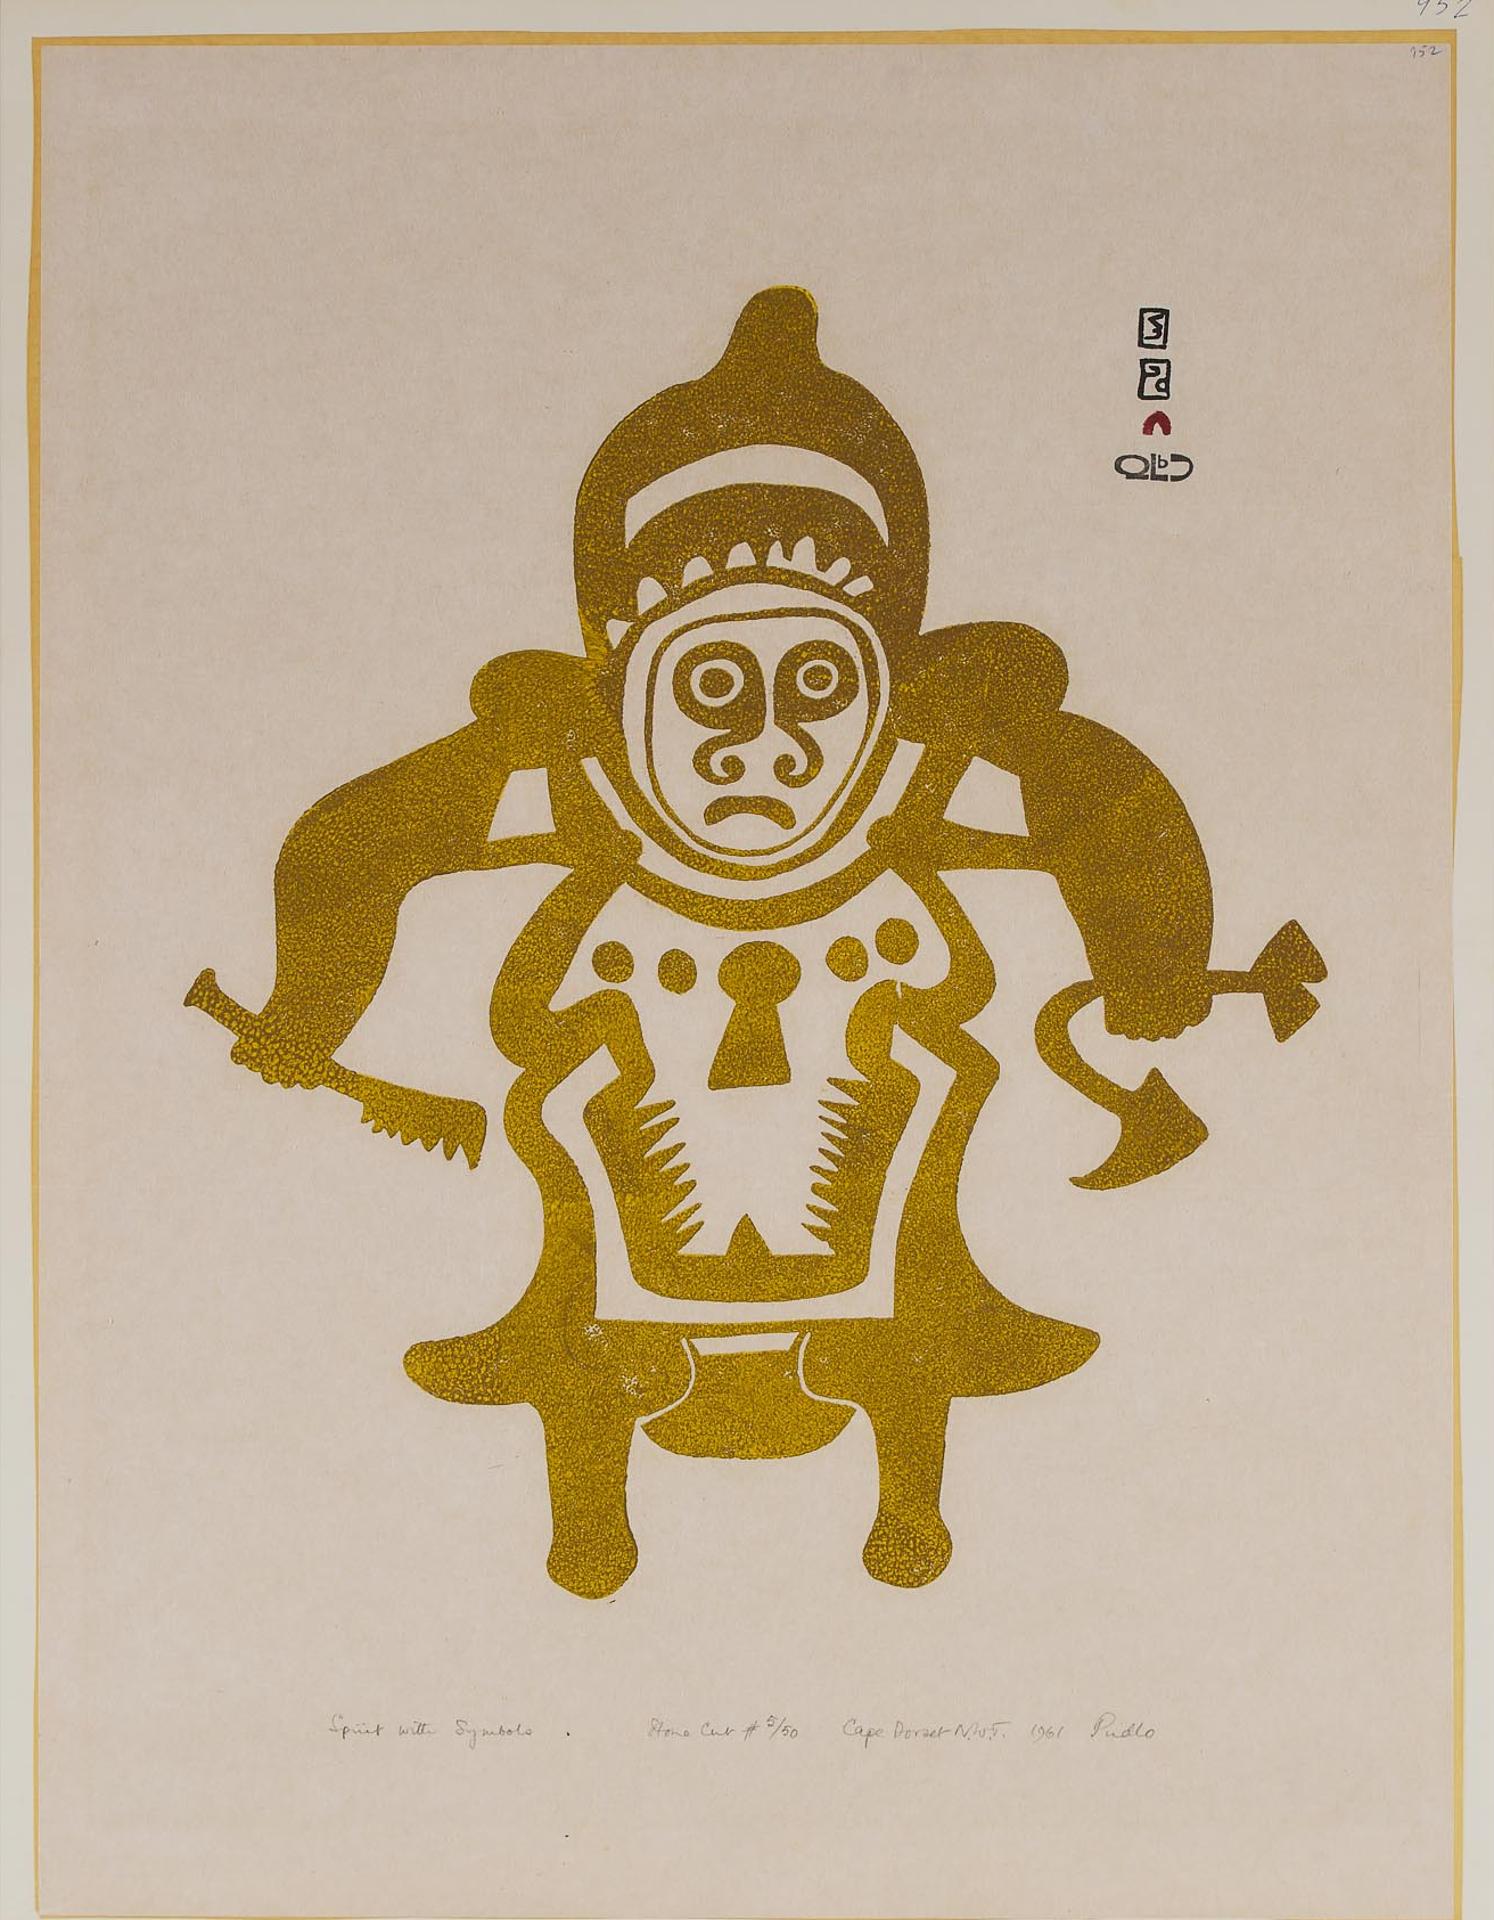 Pudlo Pudlat (1916-1992) - Spirit With Symbols, 1961